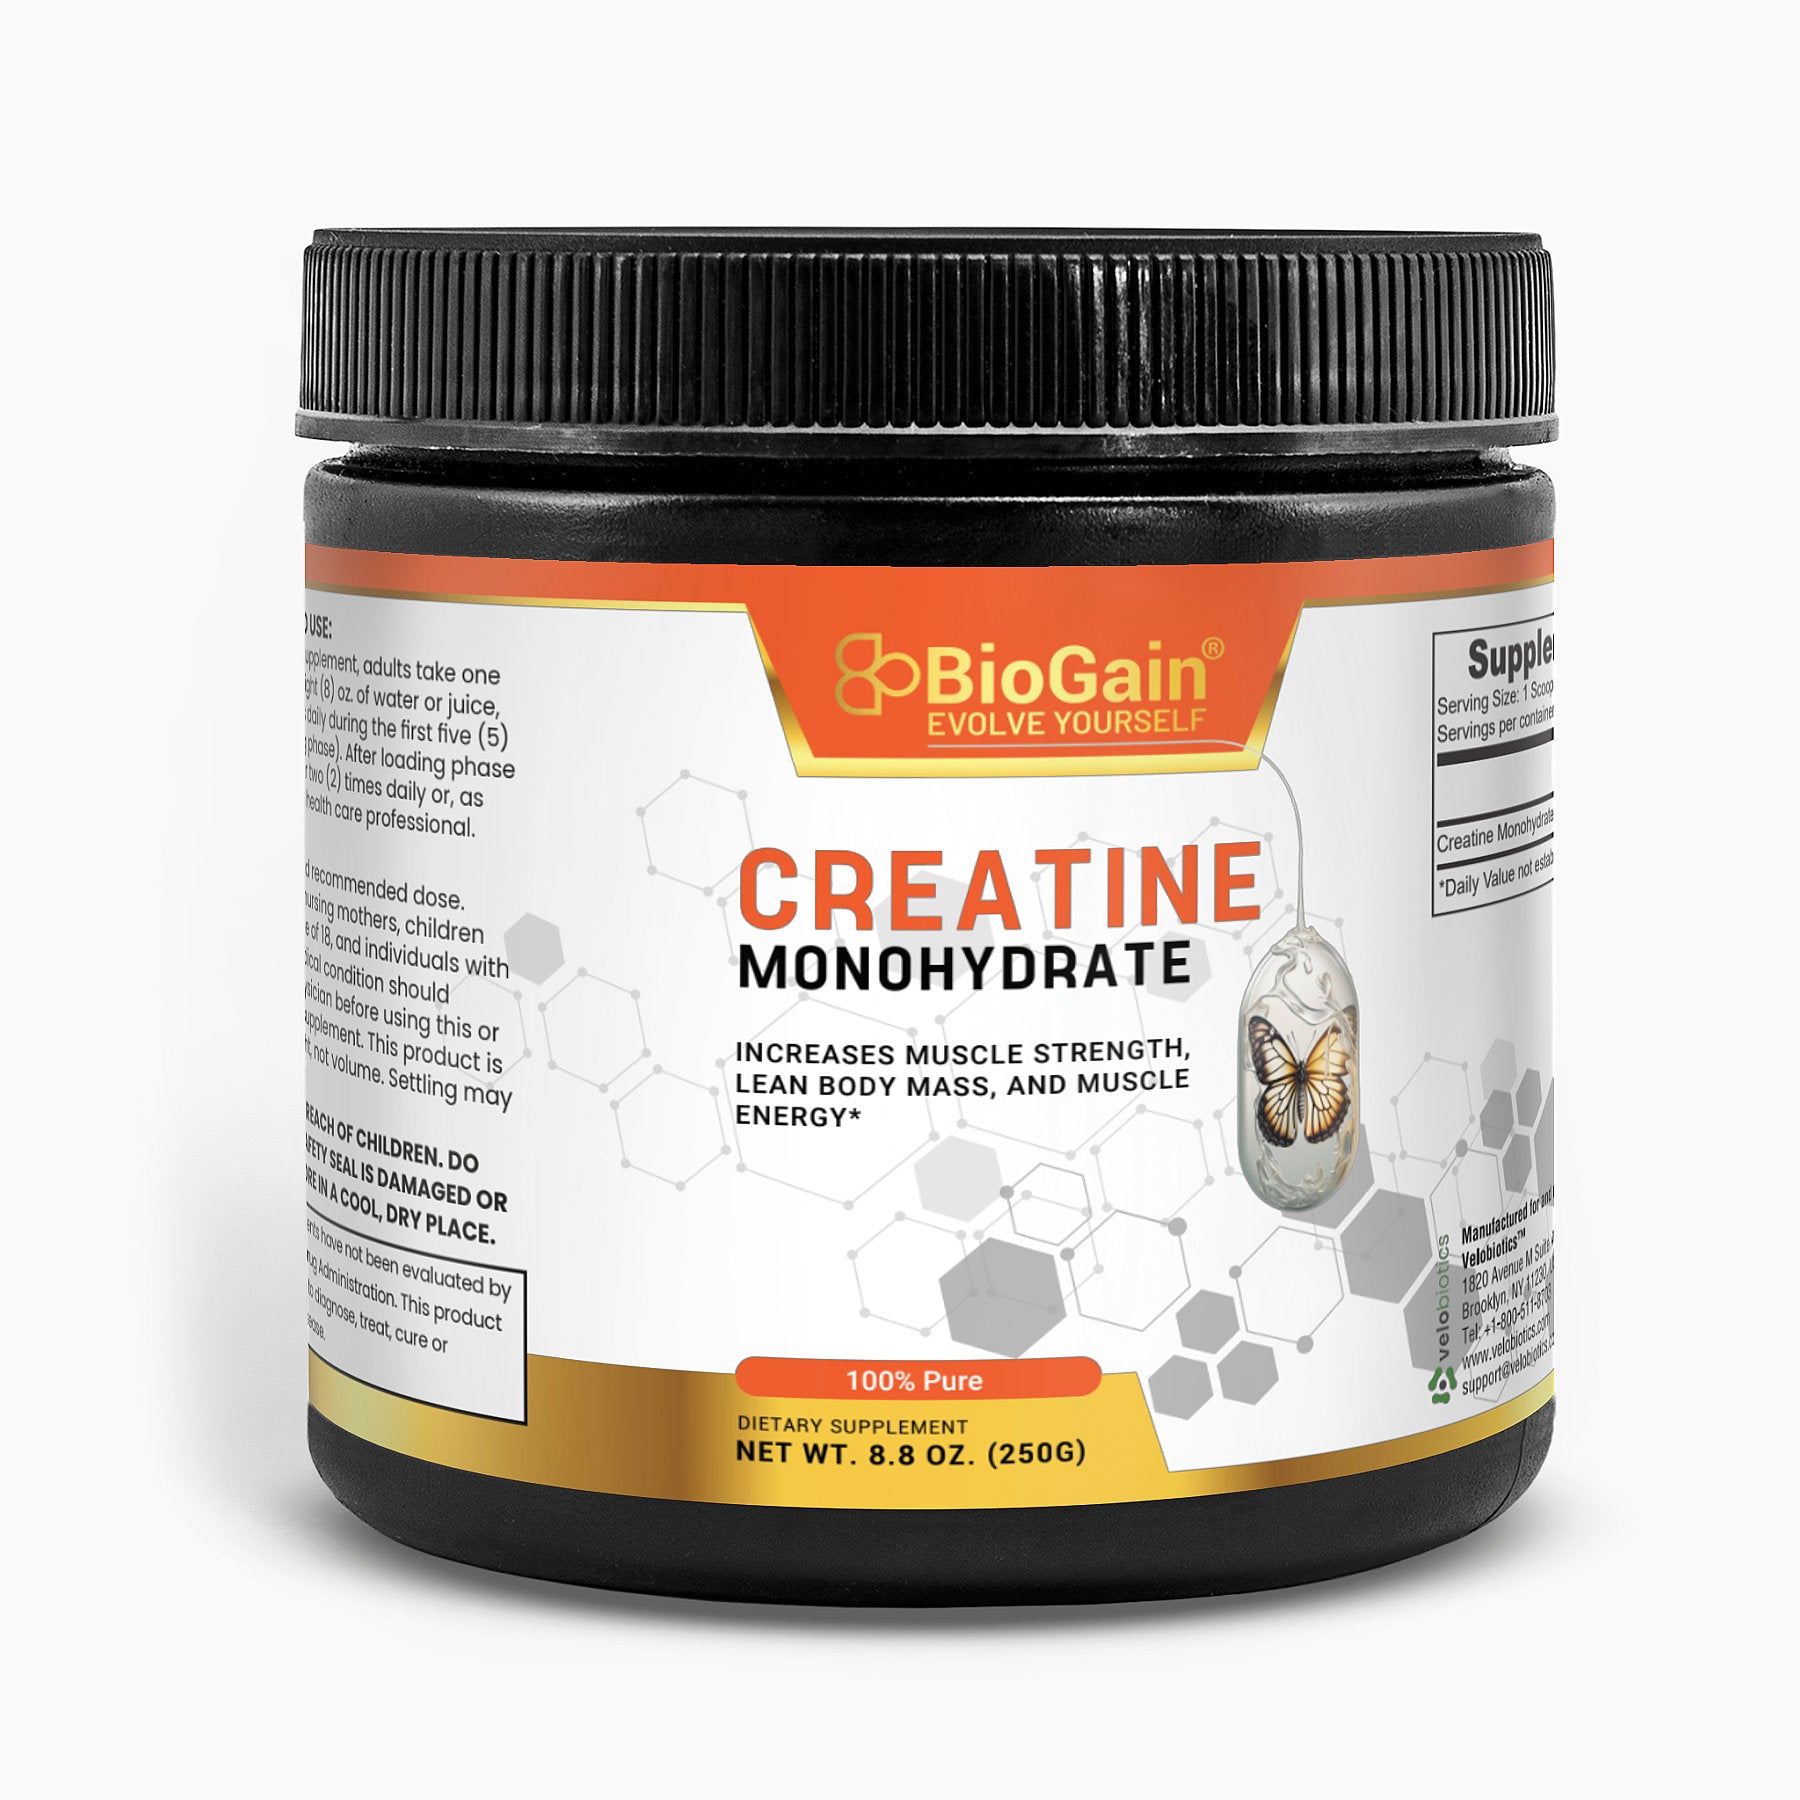 BioGain Creatine Monohydrate